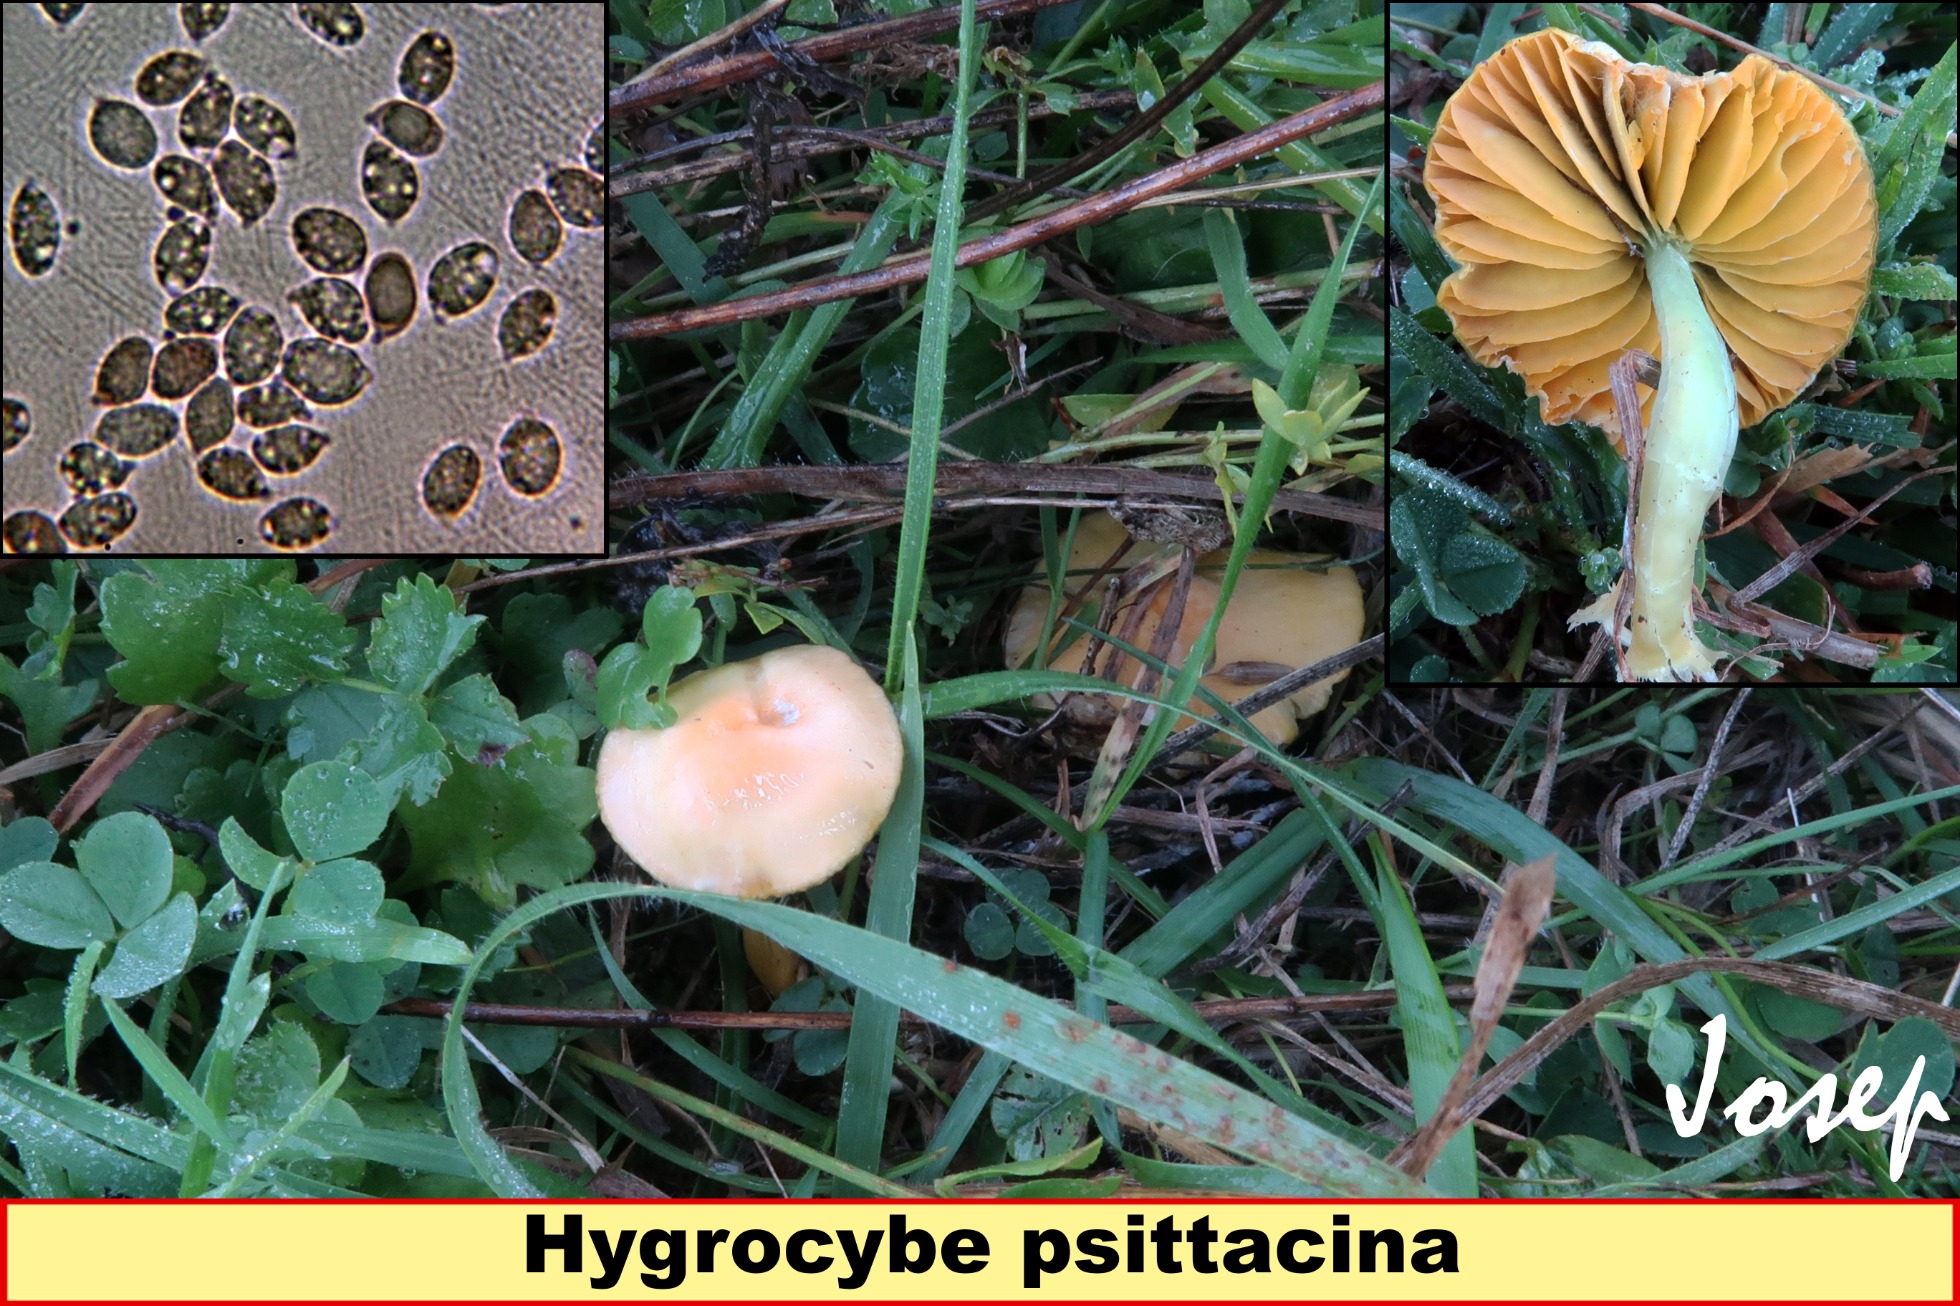 Hygrocybepsittacina.jpg